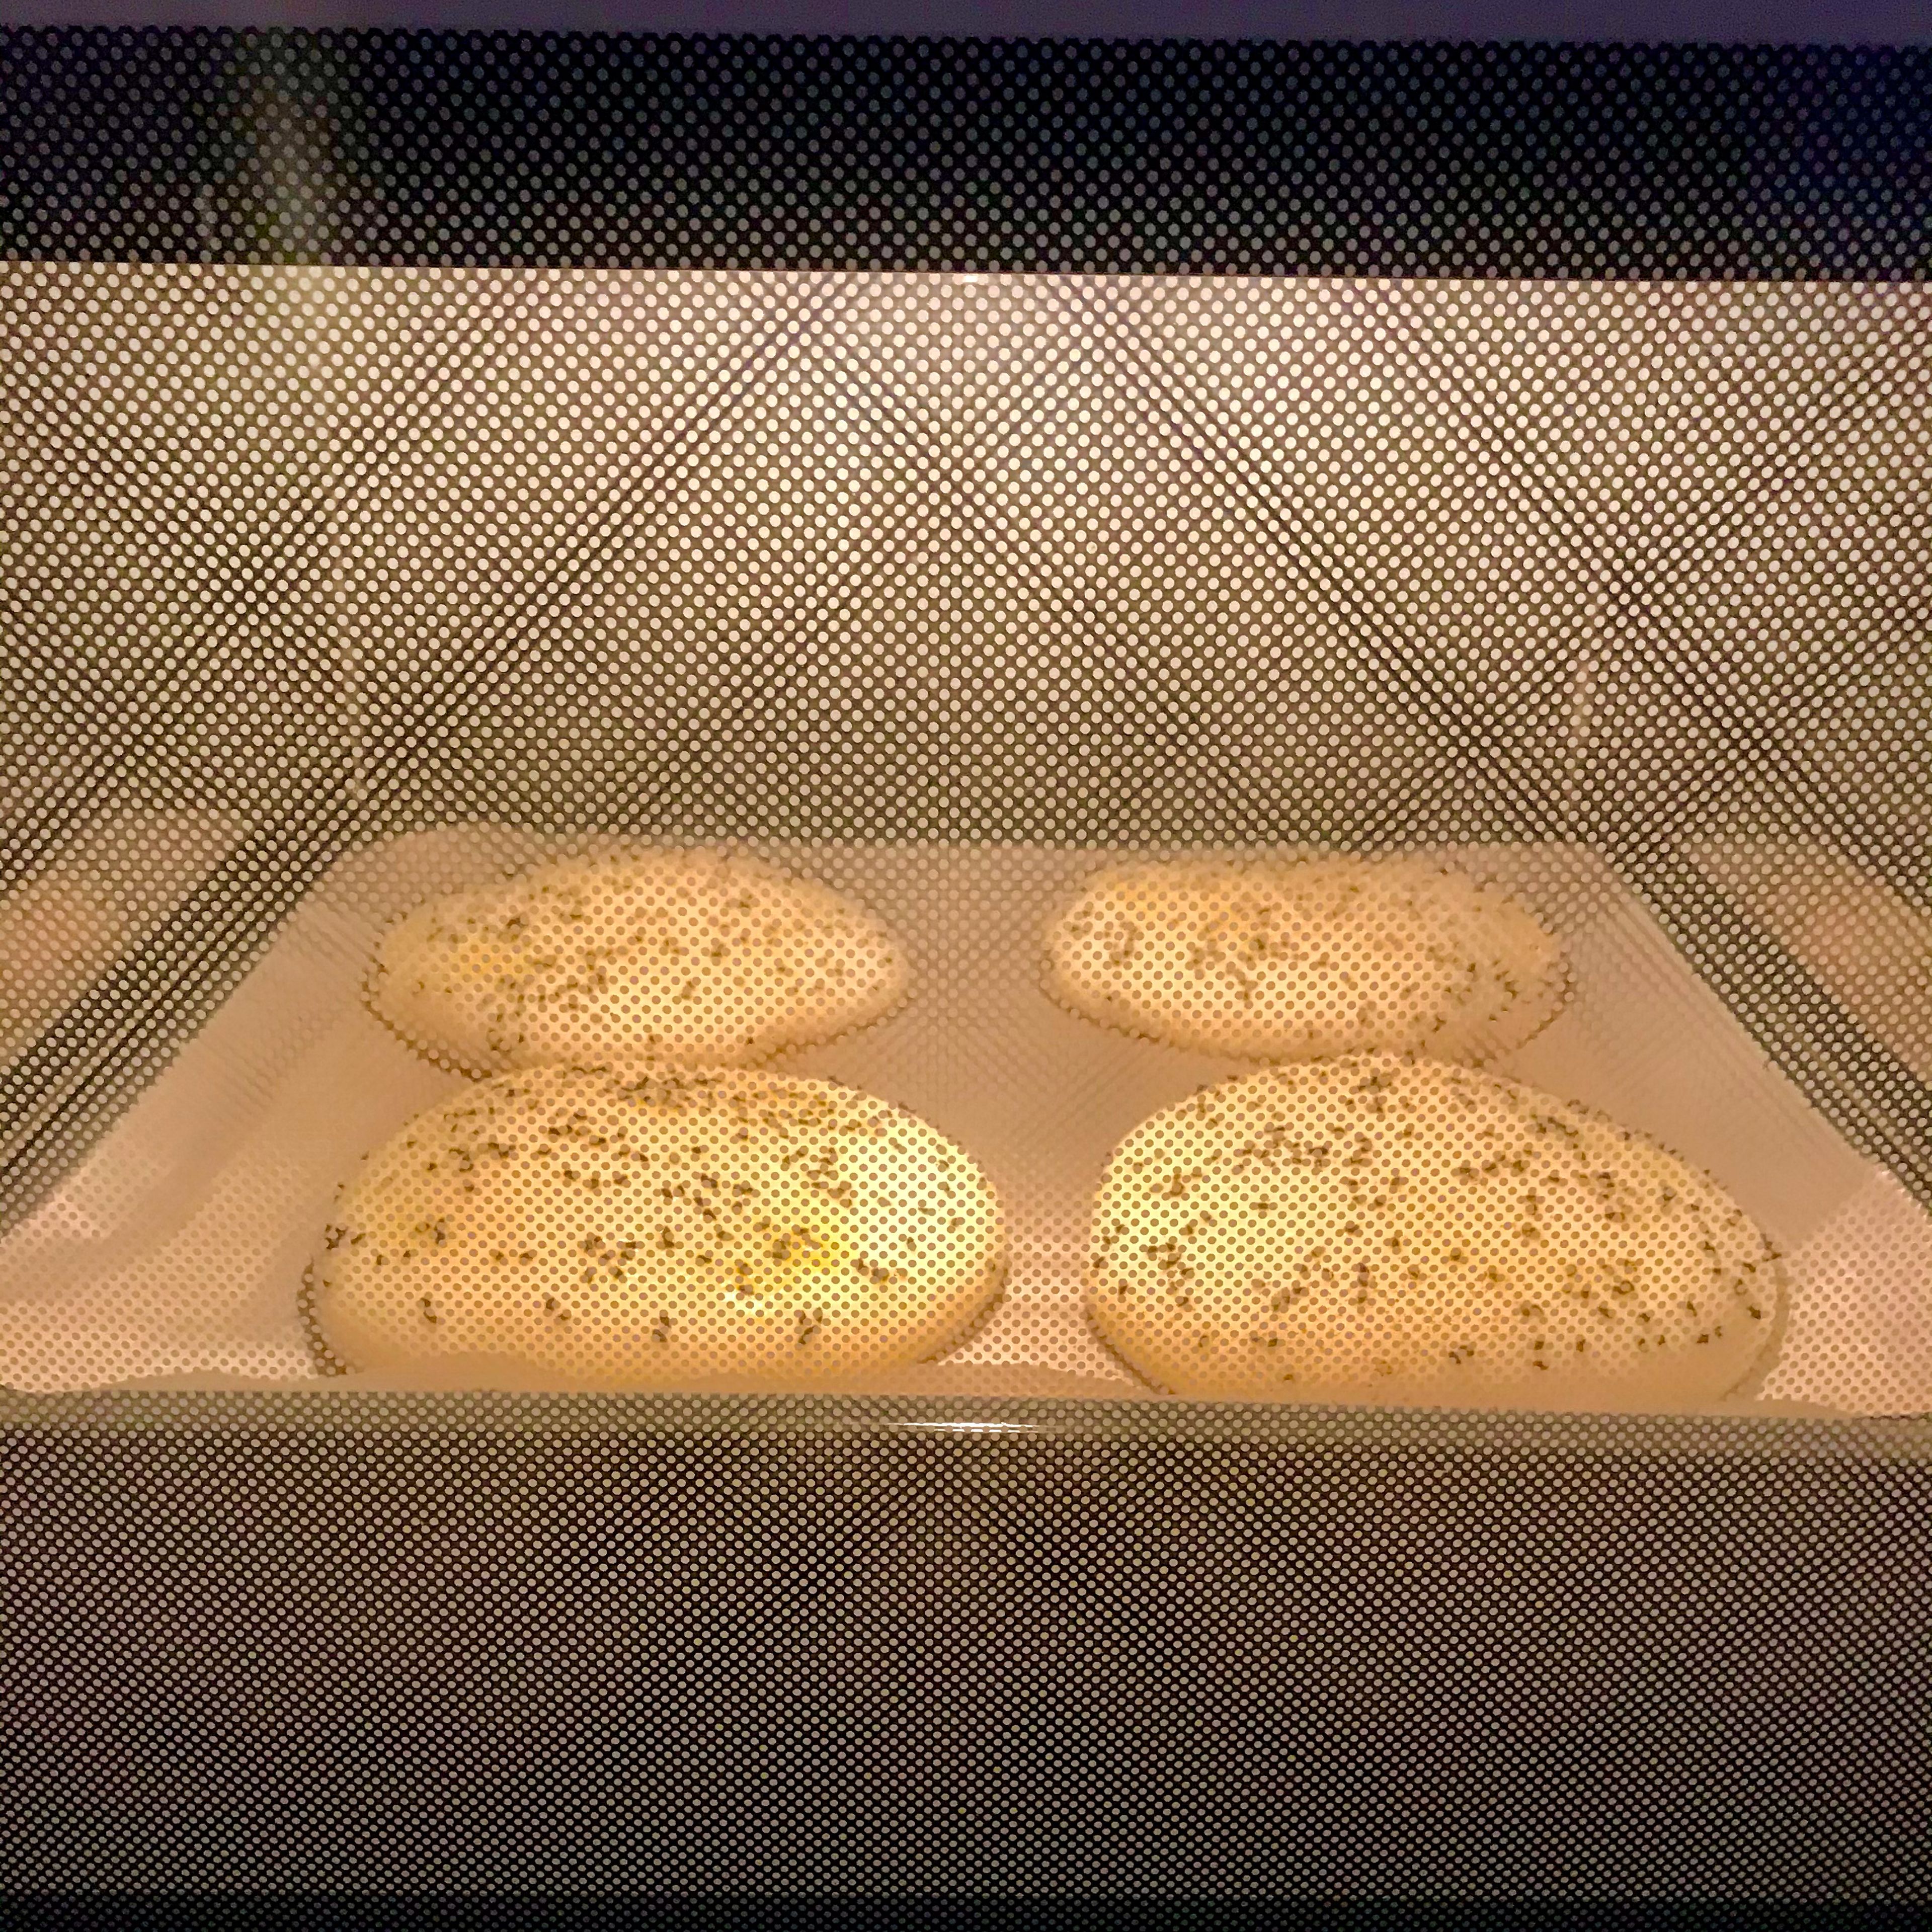 Im vorgeheizten Ofen bei 200°C Ober-Unterhitze 20-30 Minuten backen.